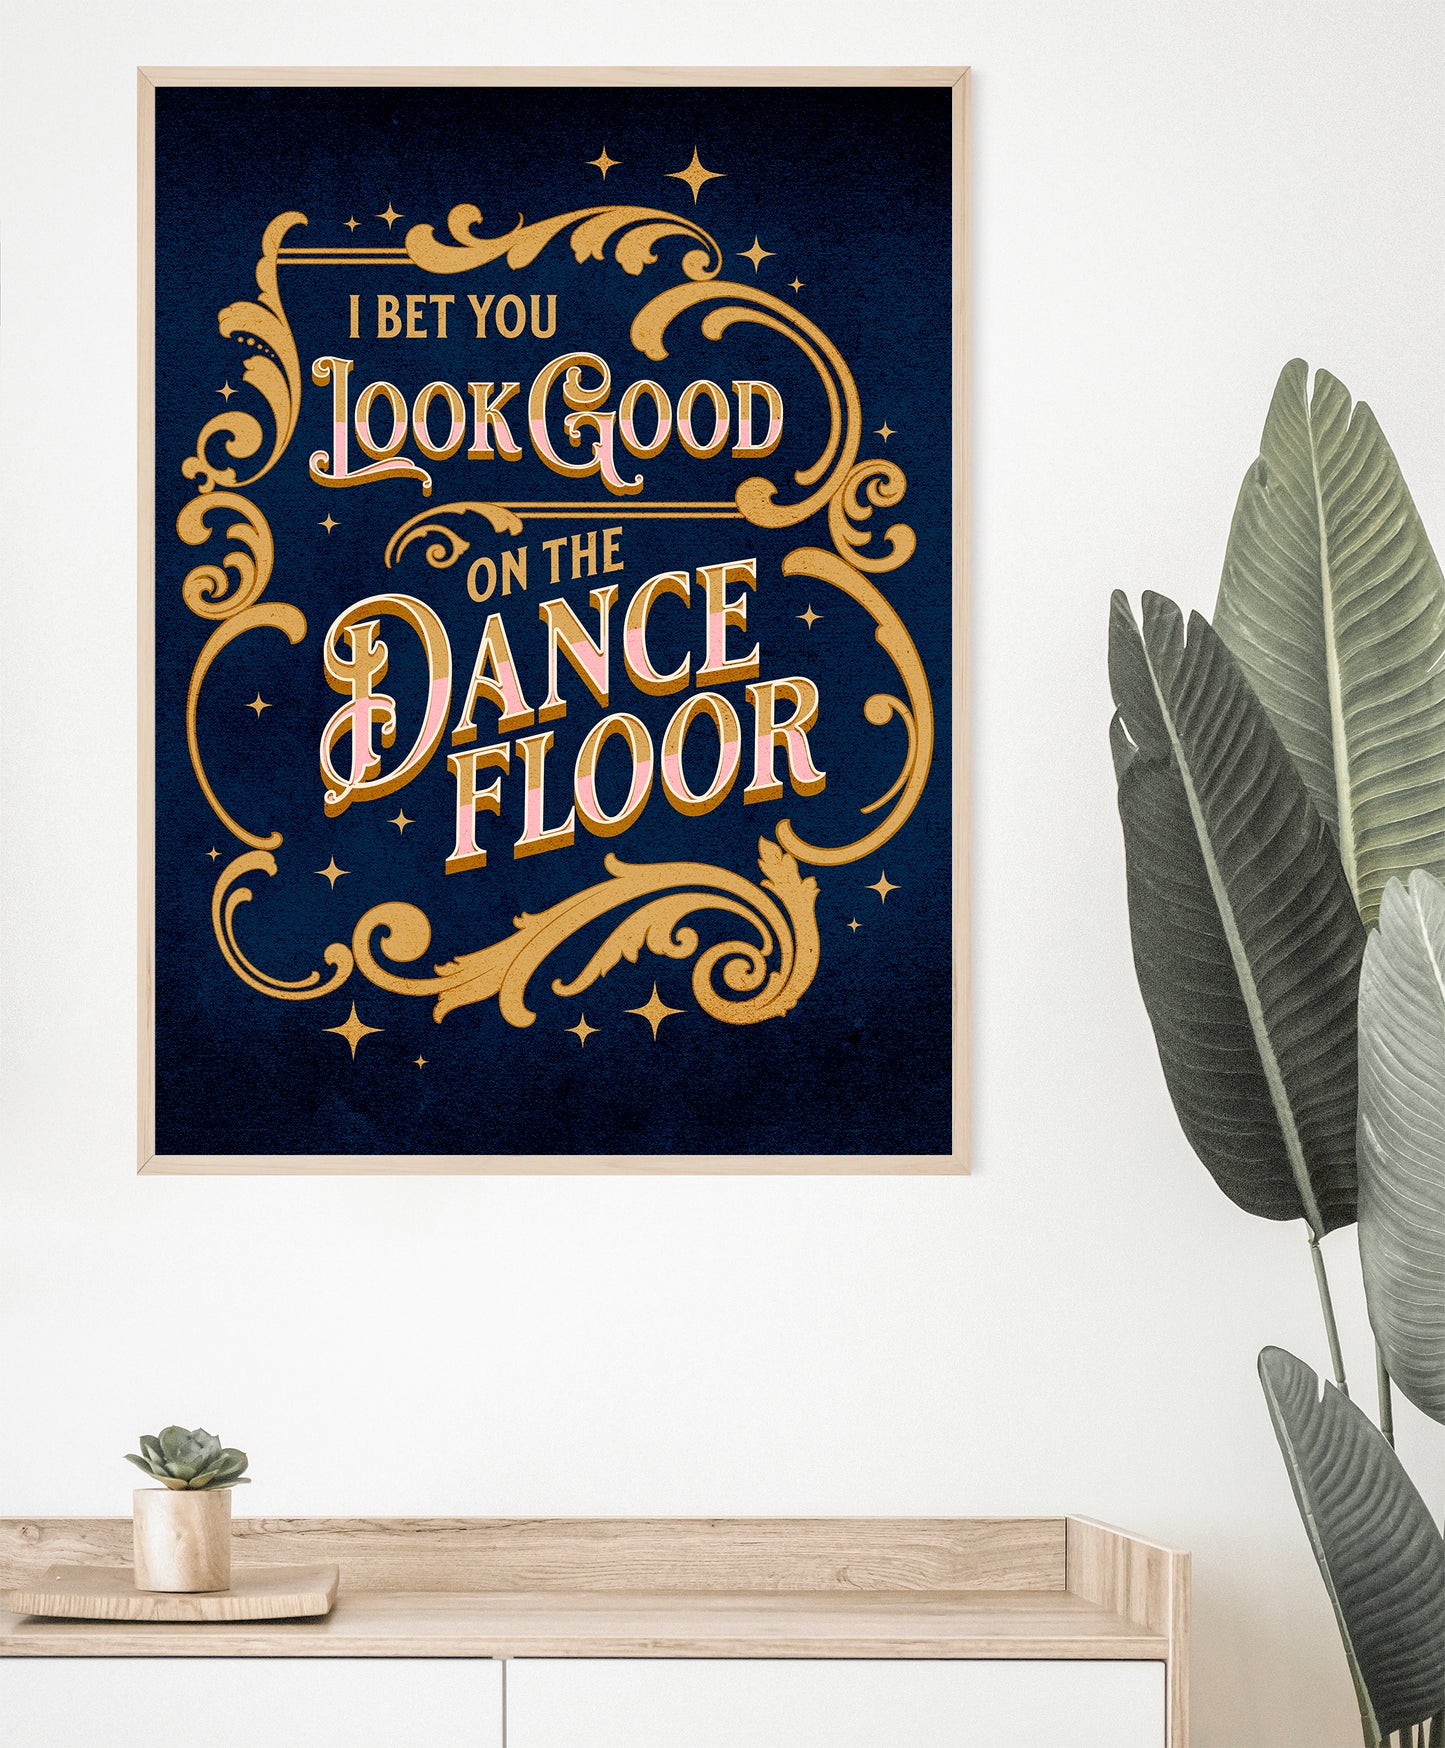 Good on the dance floor music lyrics art print poster framed on wall